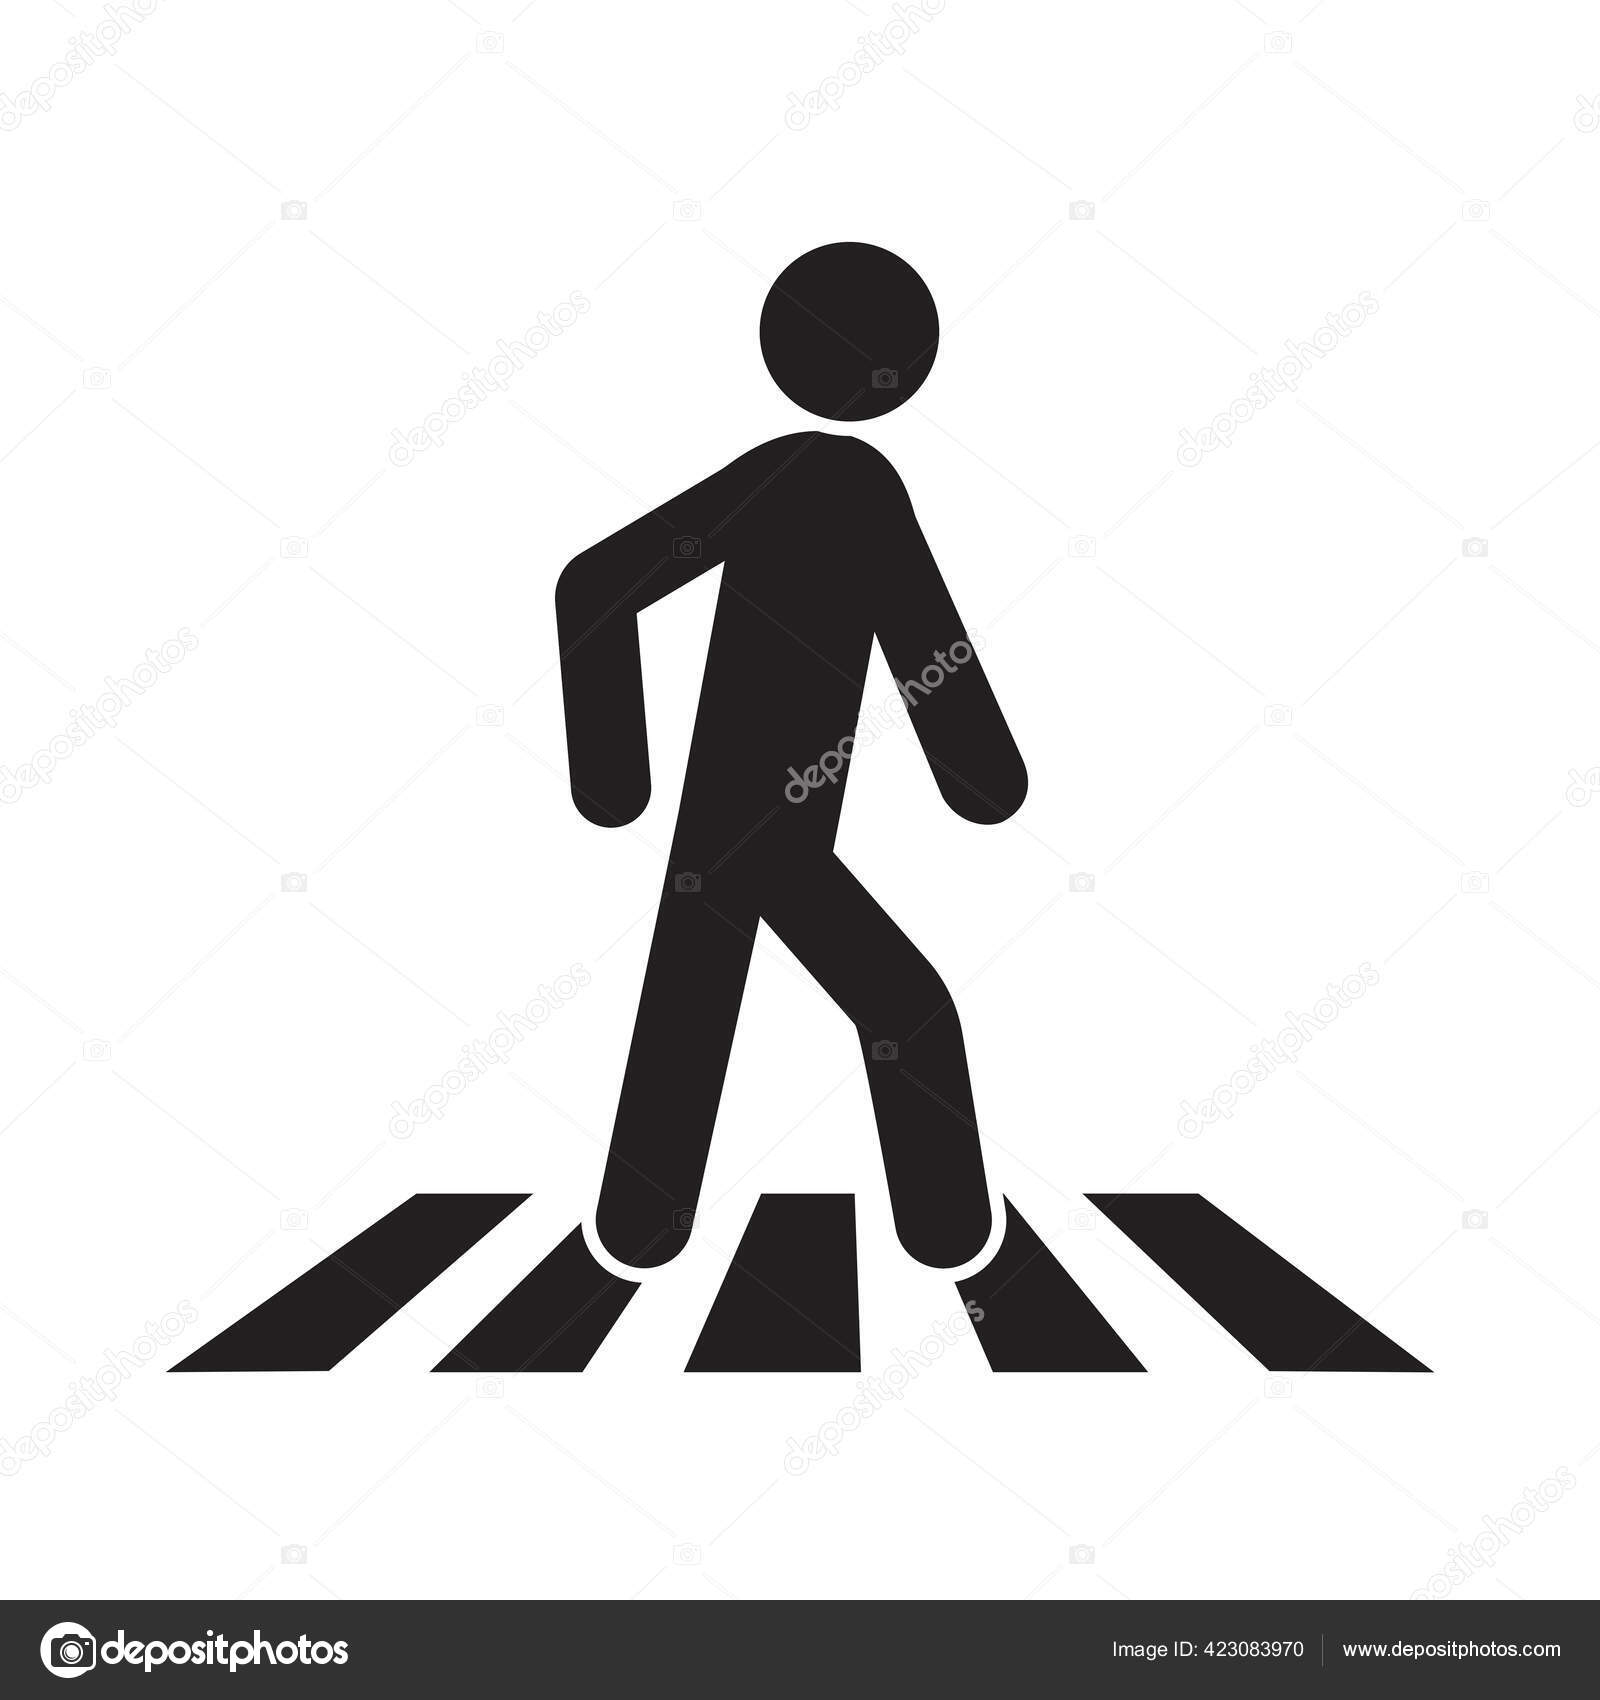 Pedestrian Crossing Road Sign Vector Illustration Stock